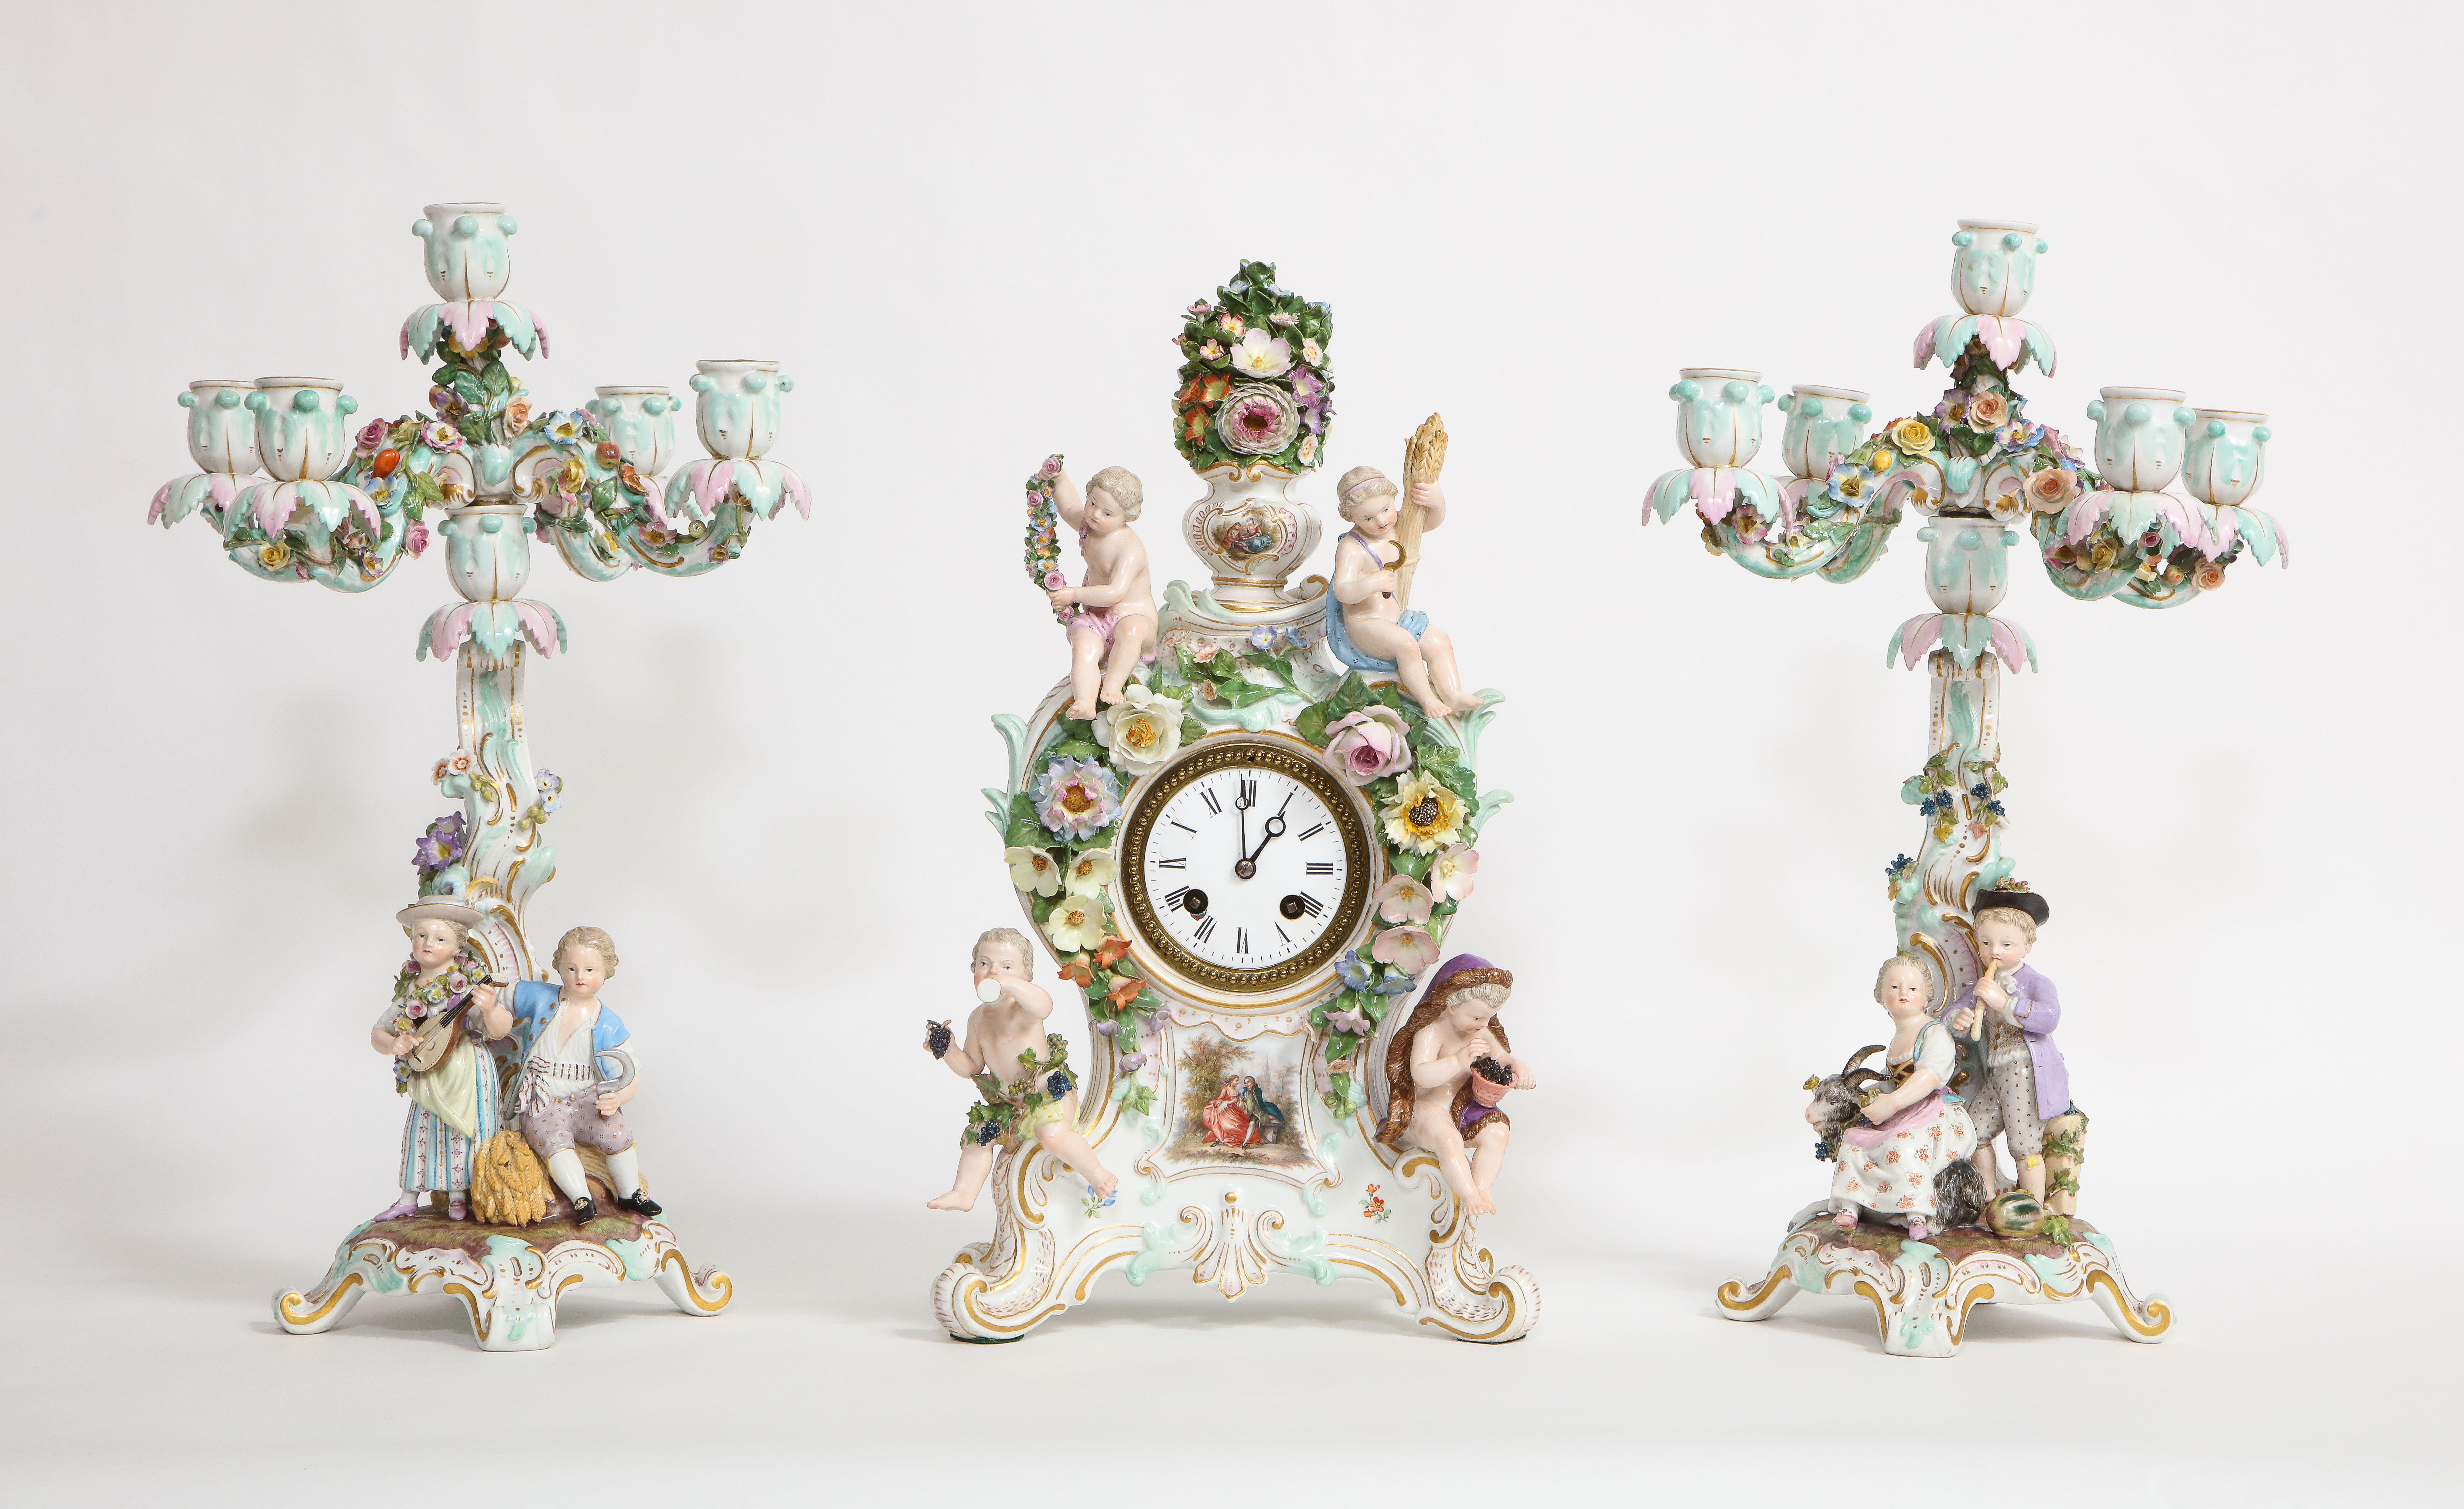 Un ensemble impressionnant et rare en porcelaine de Meissen du 19ème siècle composé d'une horloge quatre saisons et d'un candélabre. Composé de trois pièces individuelles, dont une magnifique horloge et deux candélabres assortis. L'horloge est